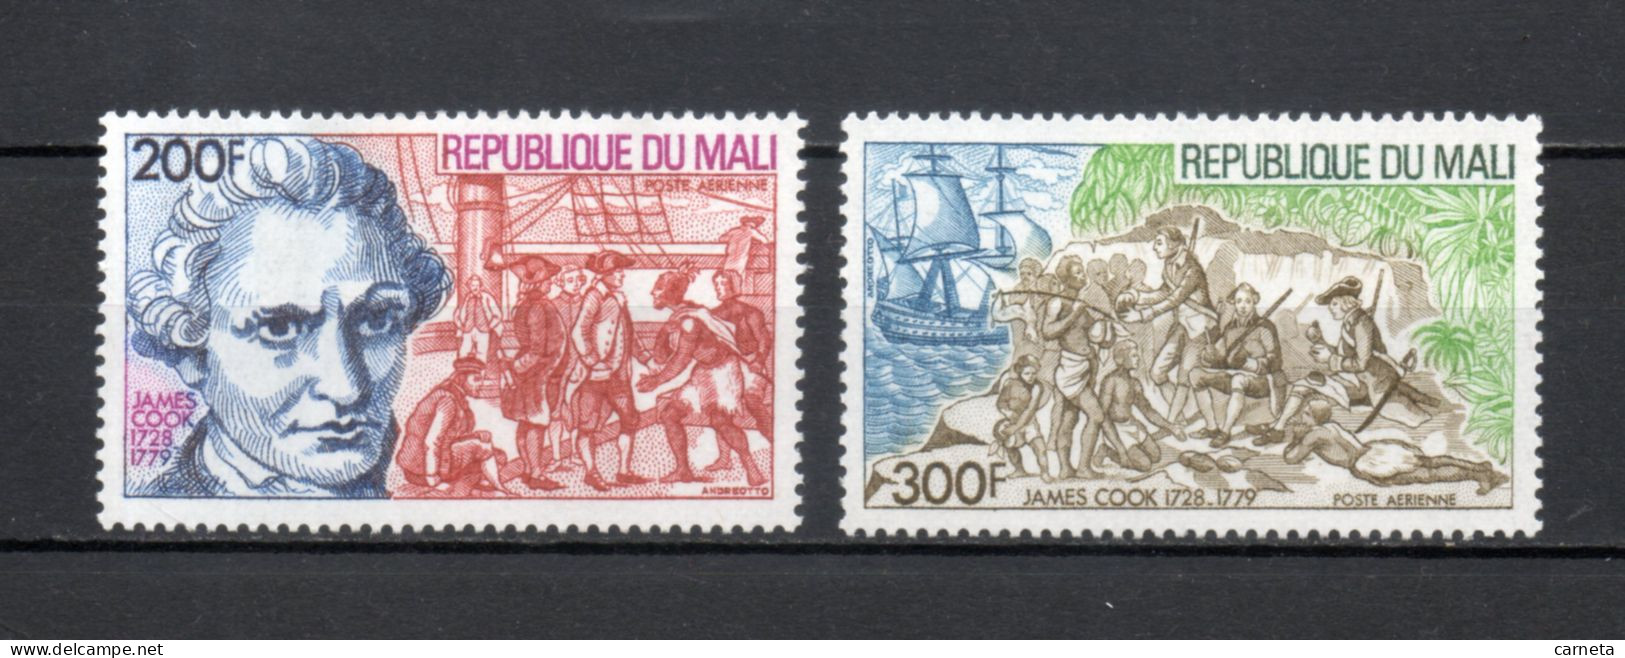 MALI  PA  N° 320 + 321   NEUFS SANS CHARNIERE  COTE 5.00€    COOK NAVIGATEUR  BATEAUX - Mali (1959-...)